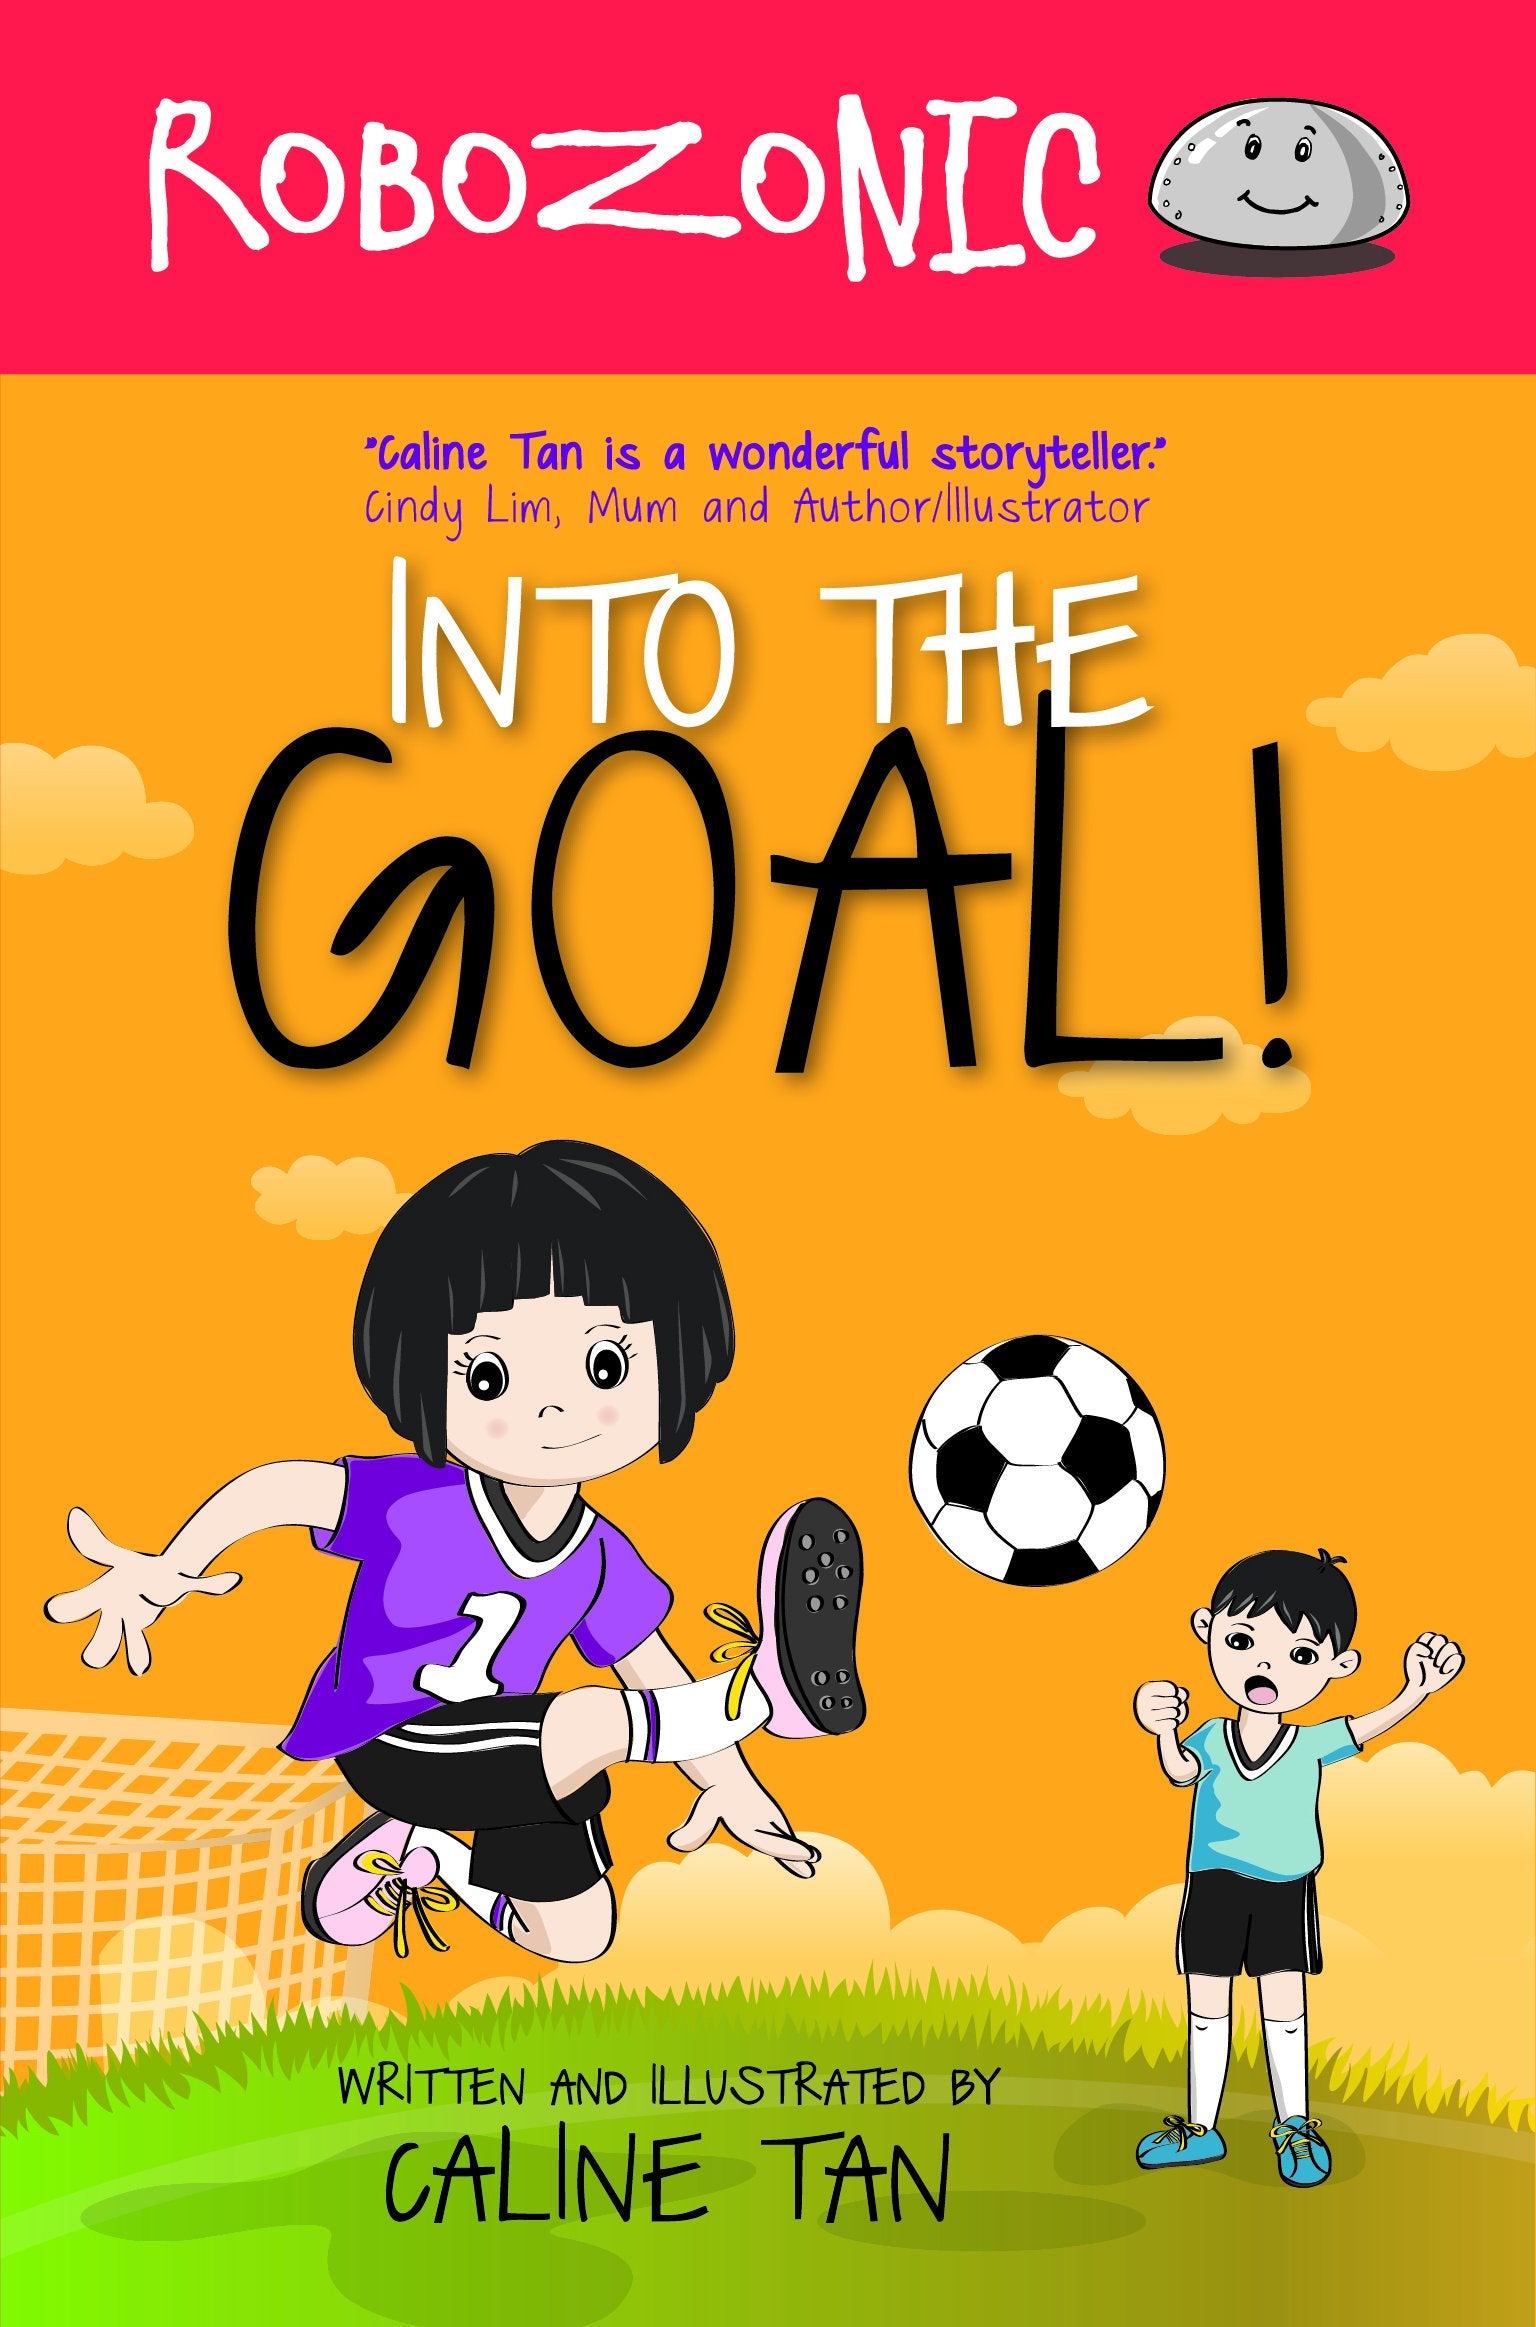 Robozonic: Into the Goal!